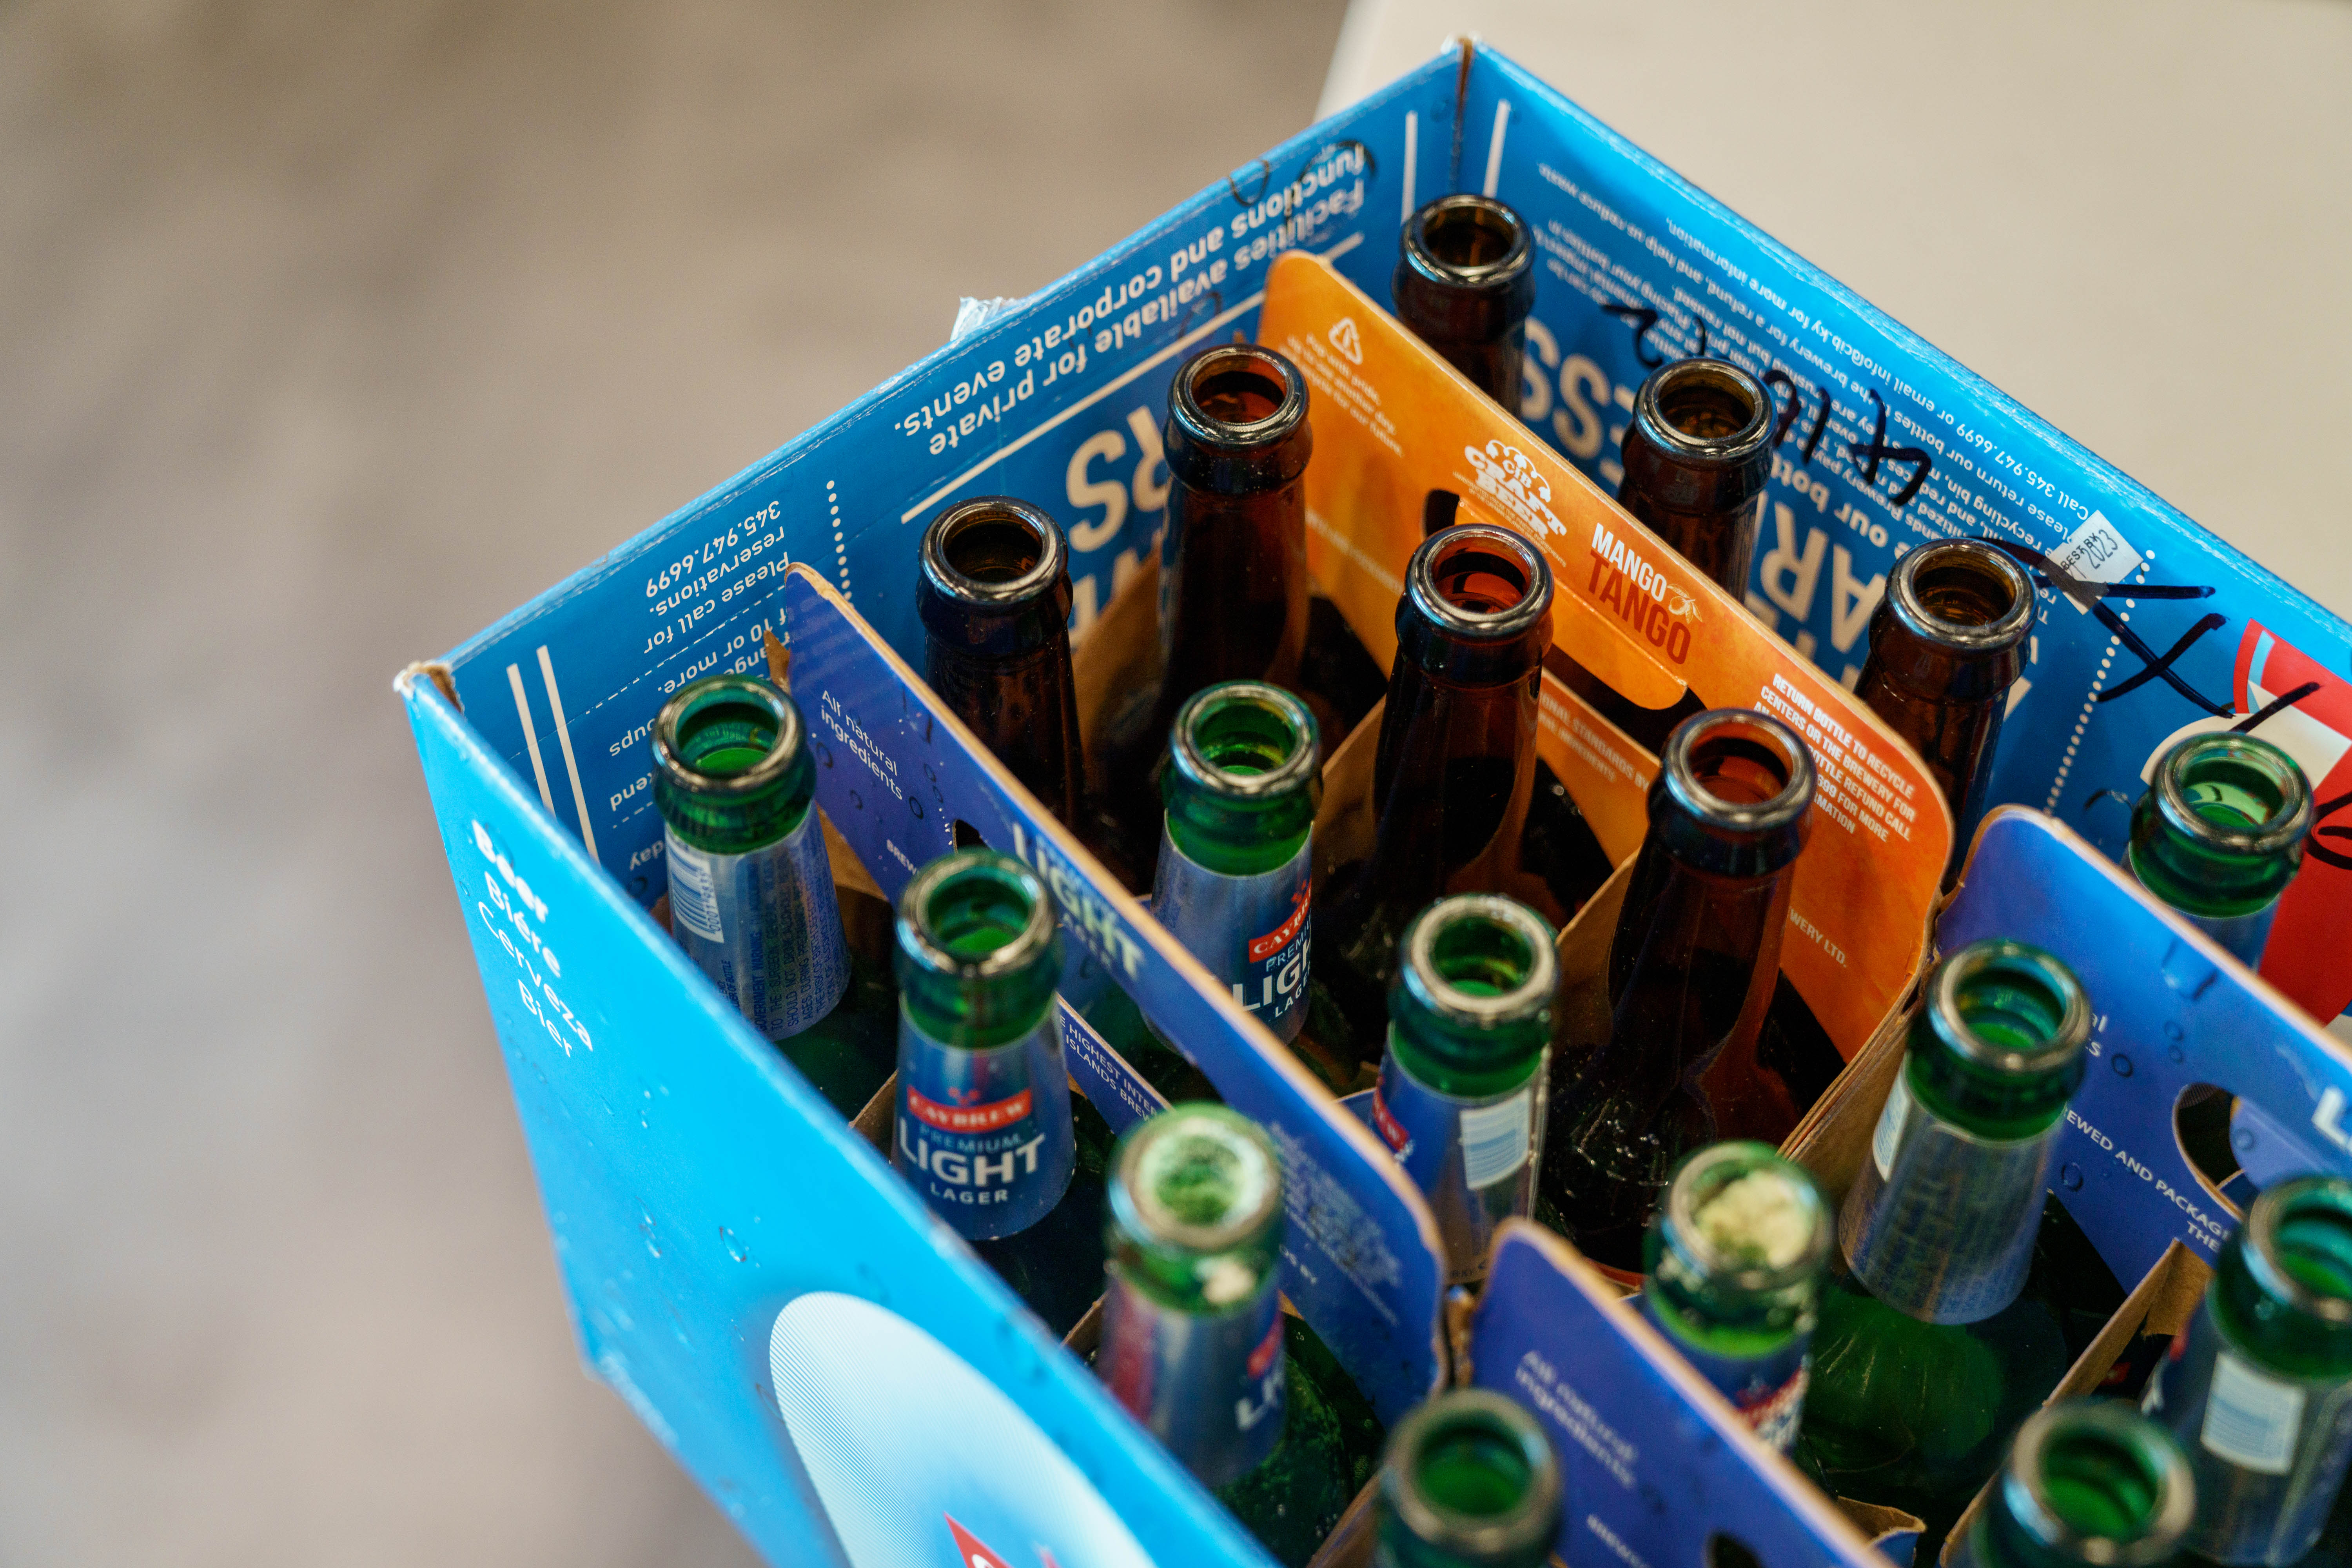 Box of empty beer bottles